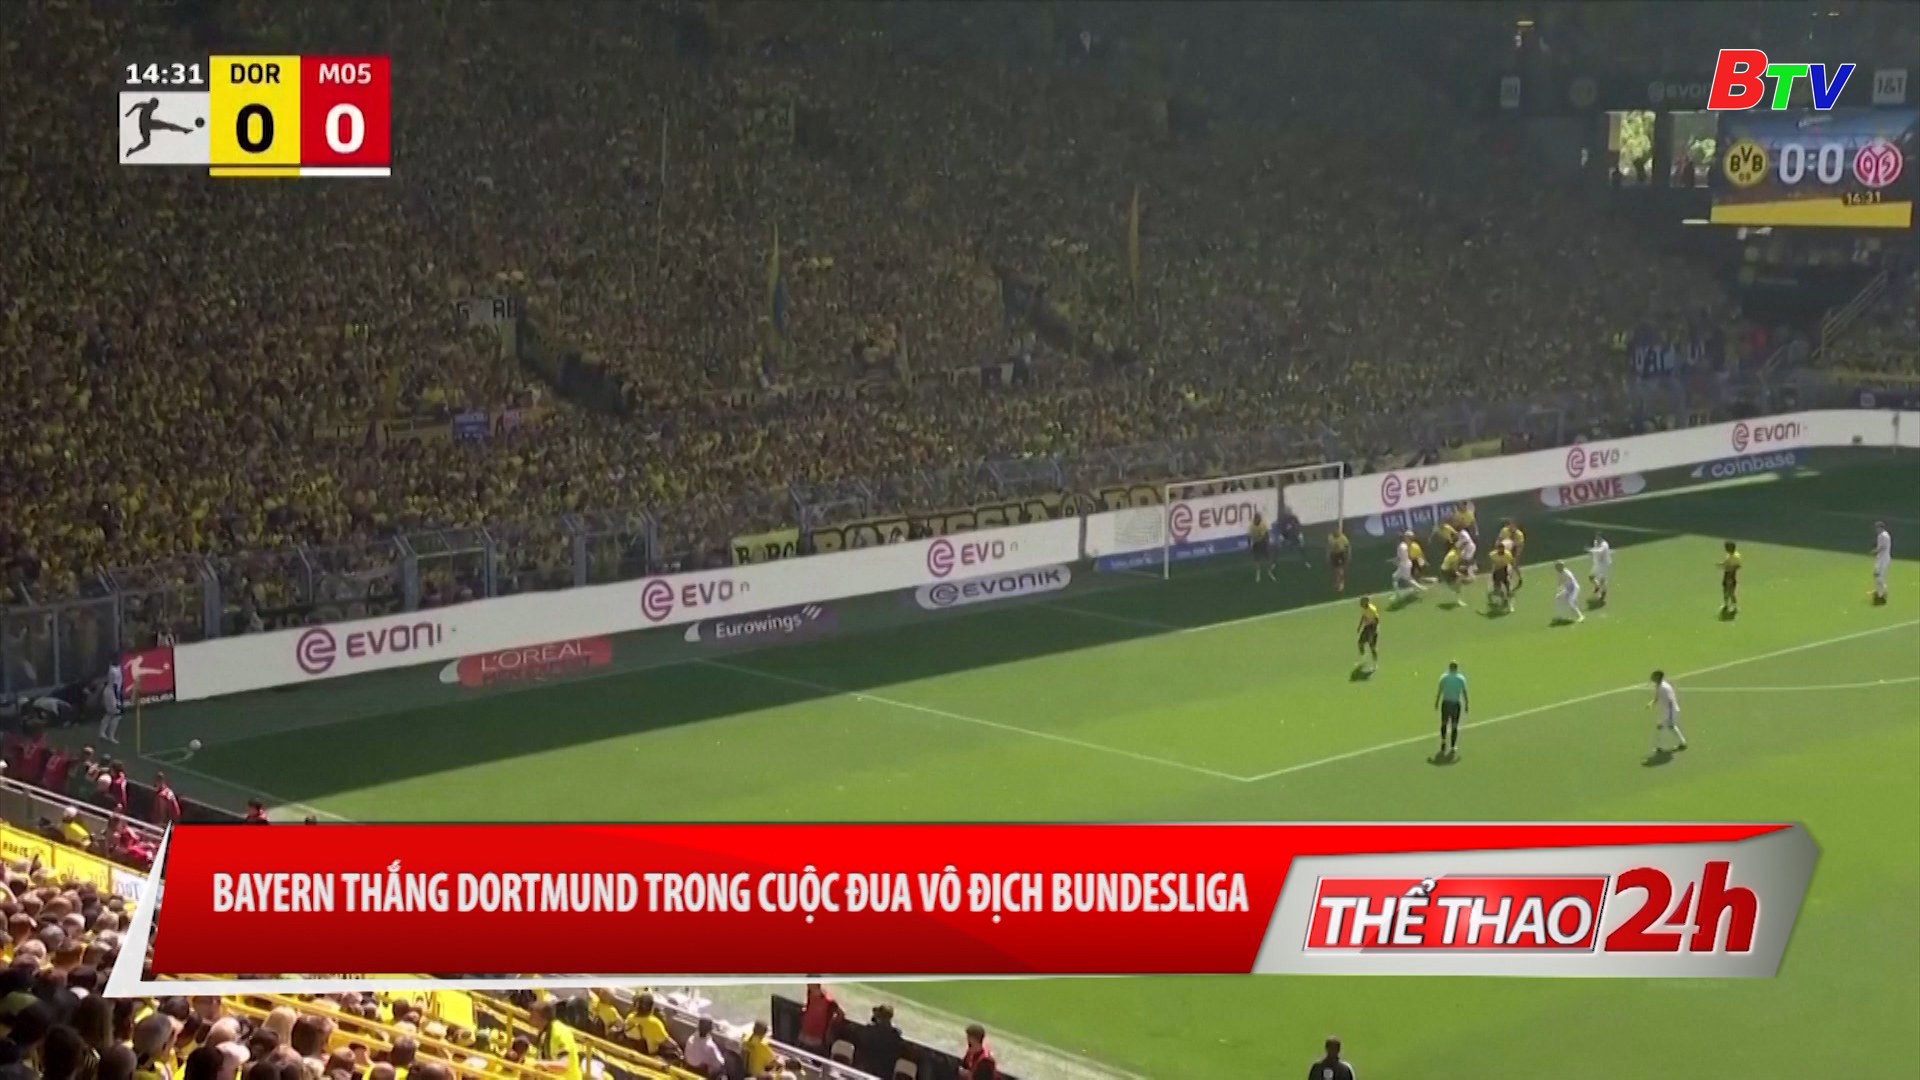 Bayern thắng Dortmund trong cuộc đua vô địch Bundesliga